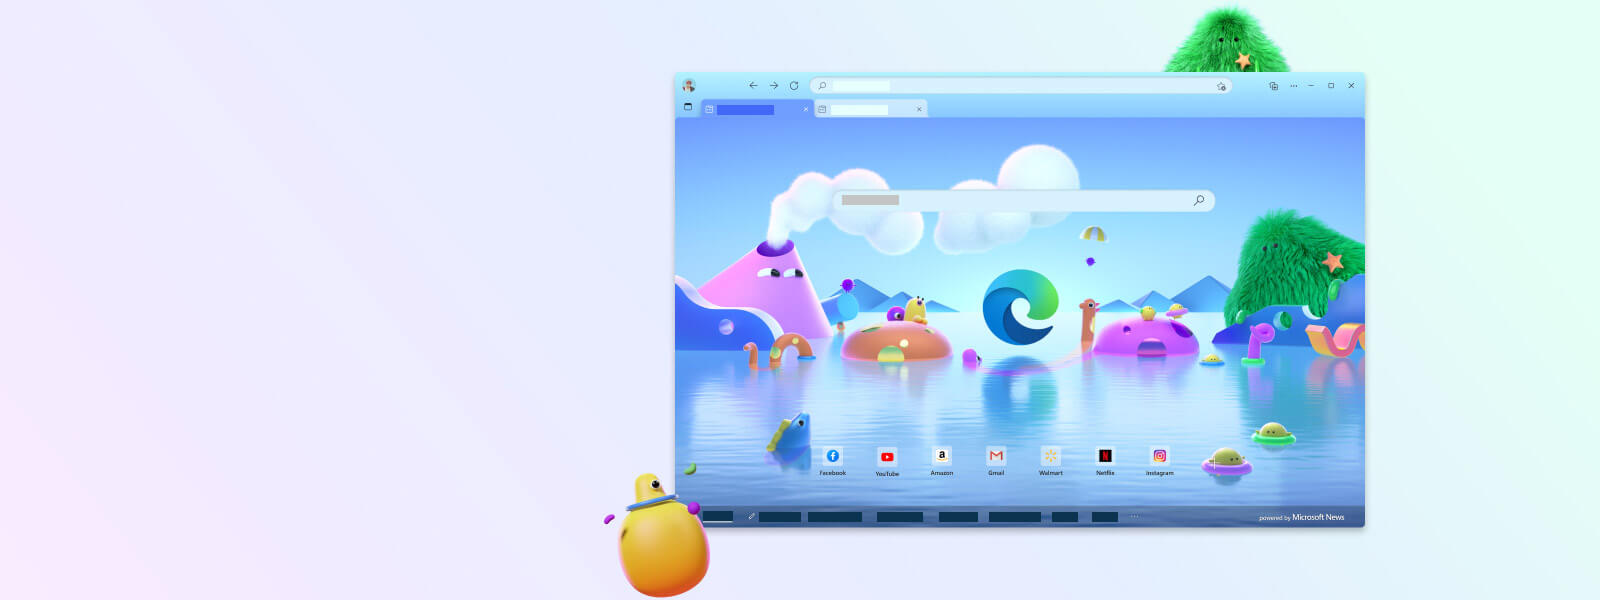 Bildschirm des Microsoft Edge-Browsers mit verschiedenen Zeichentrickfiguren für den Kindermodus